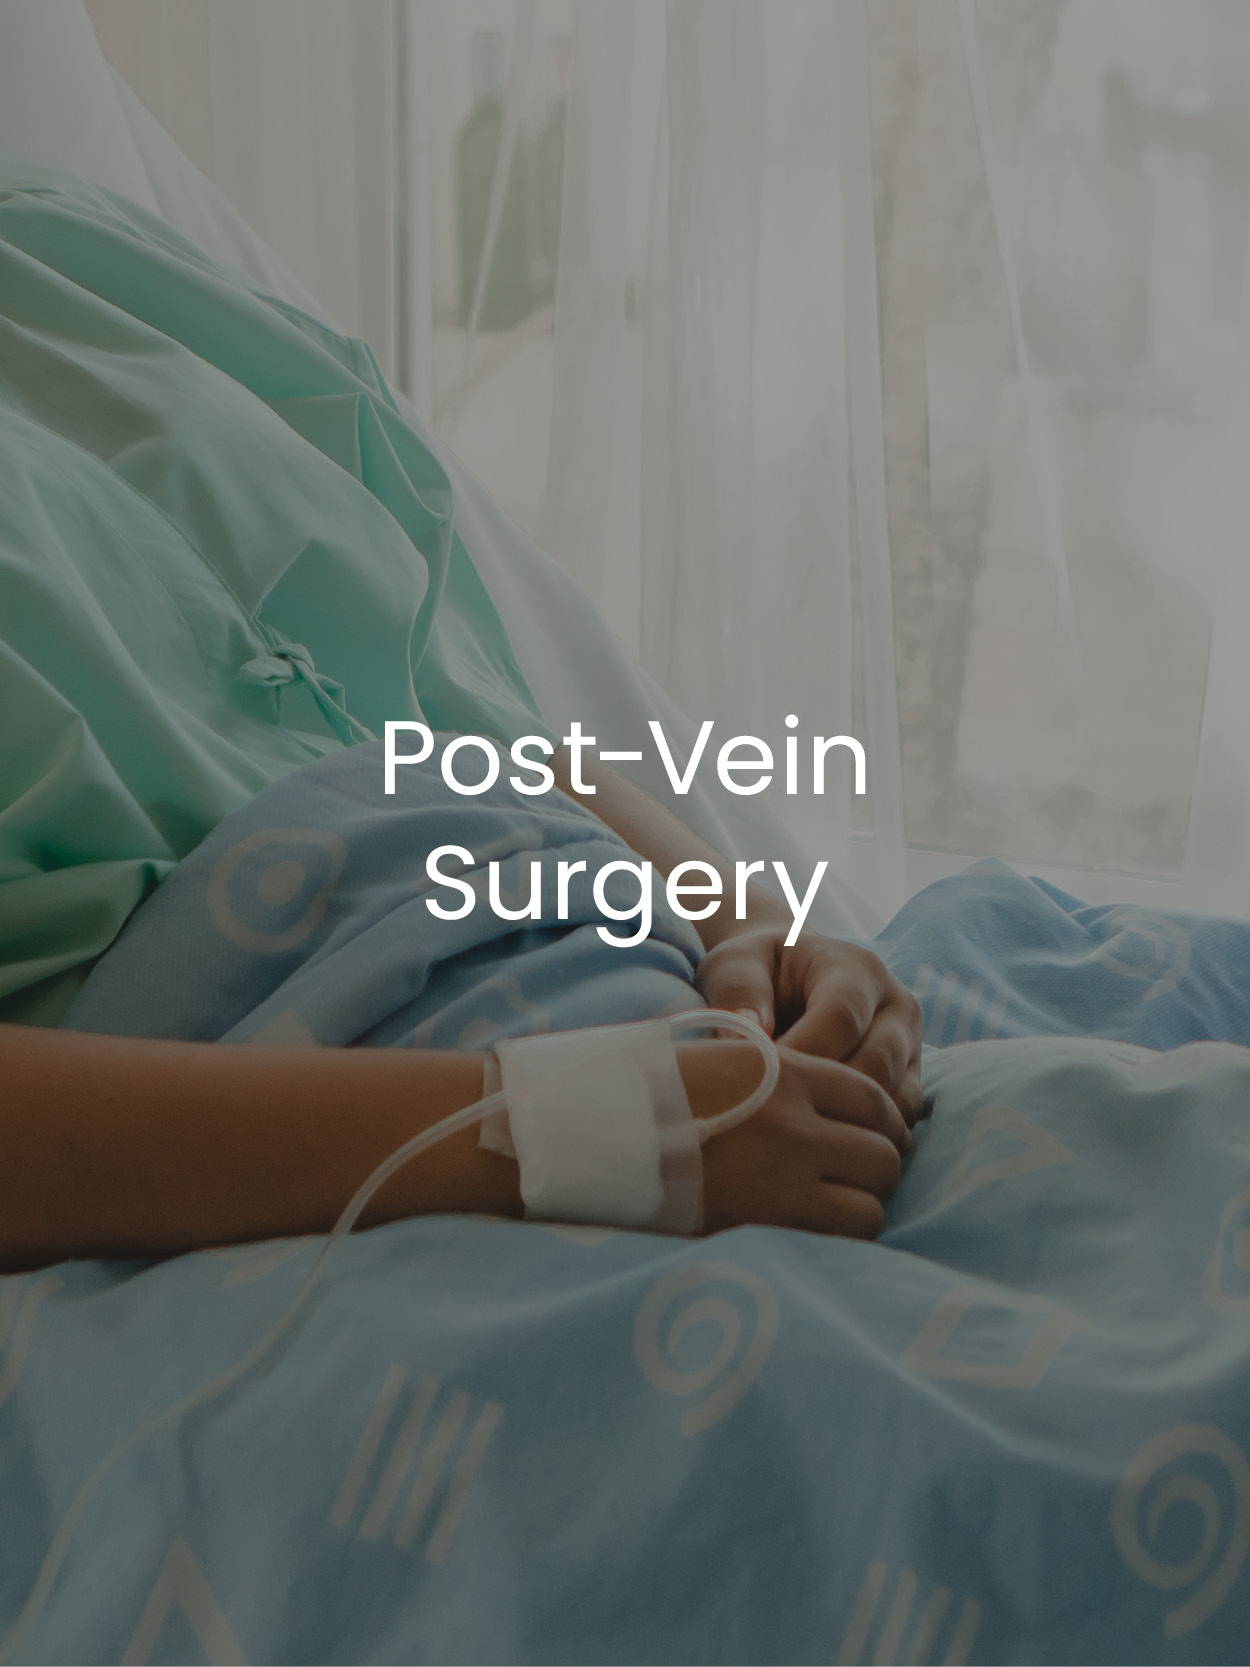 Post-Vein Surgery